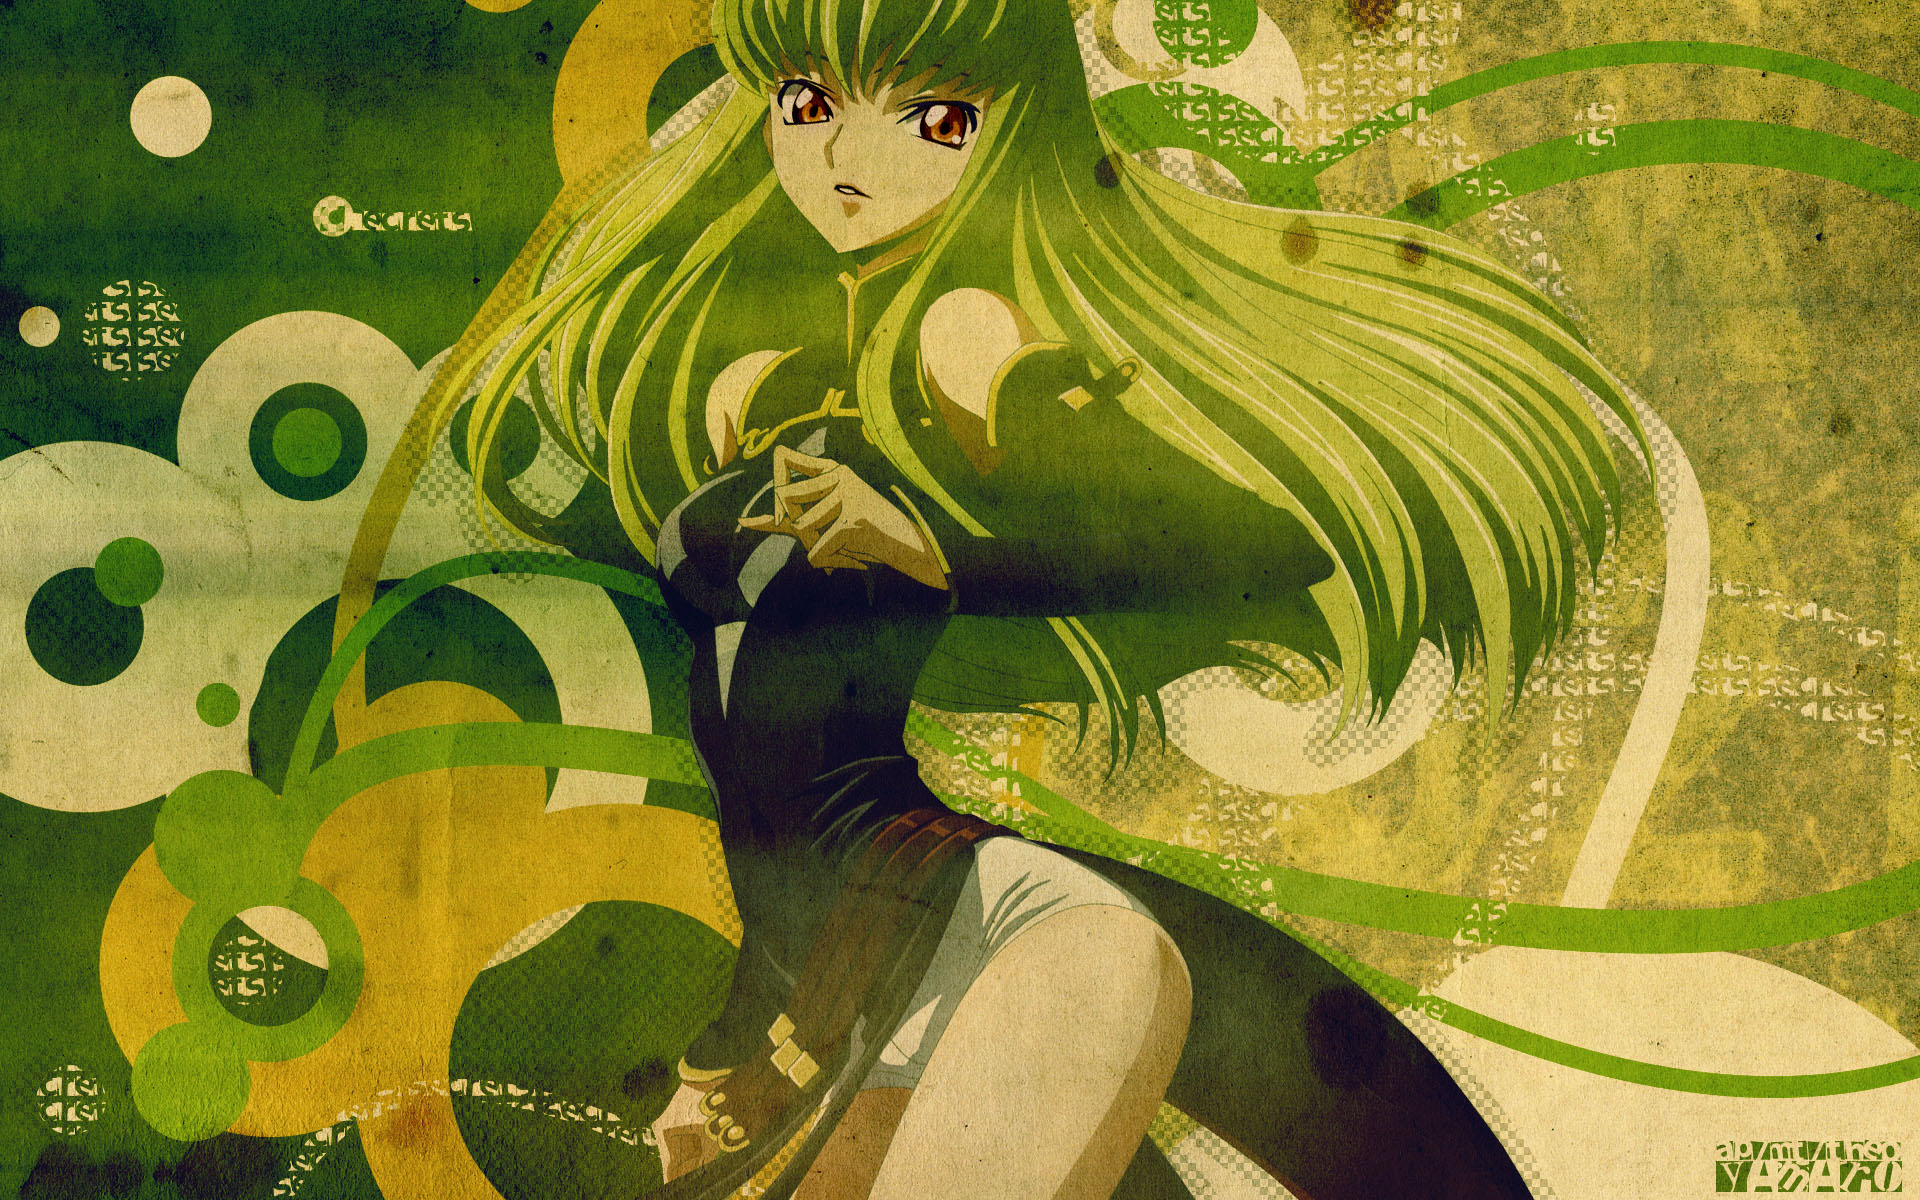 C.C. - Code Geass [7] wallpaper - Anime wallpapers - #32736